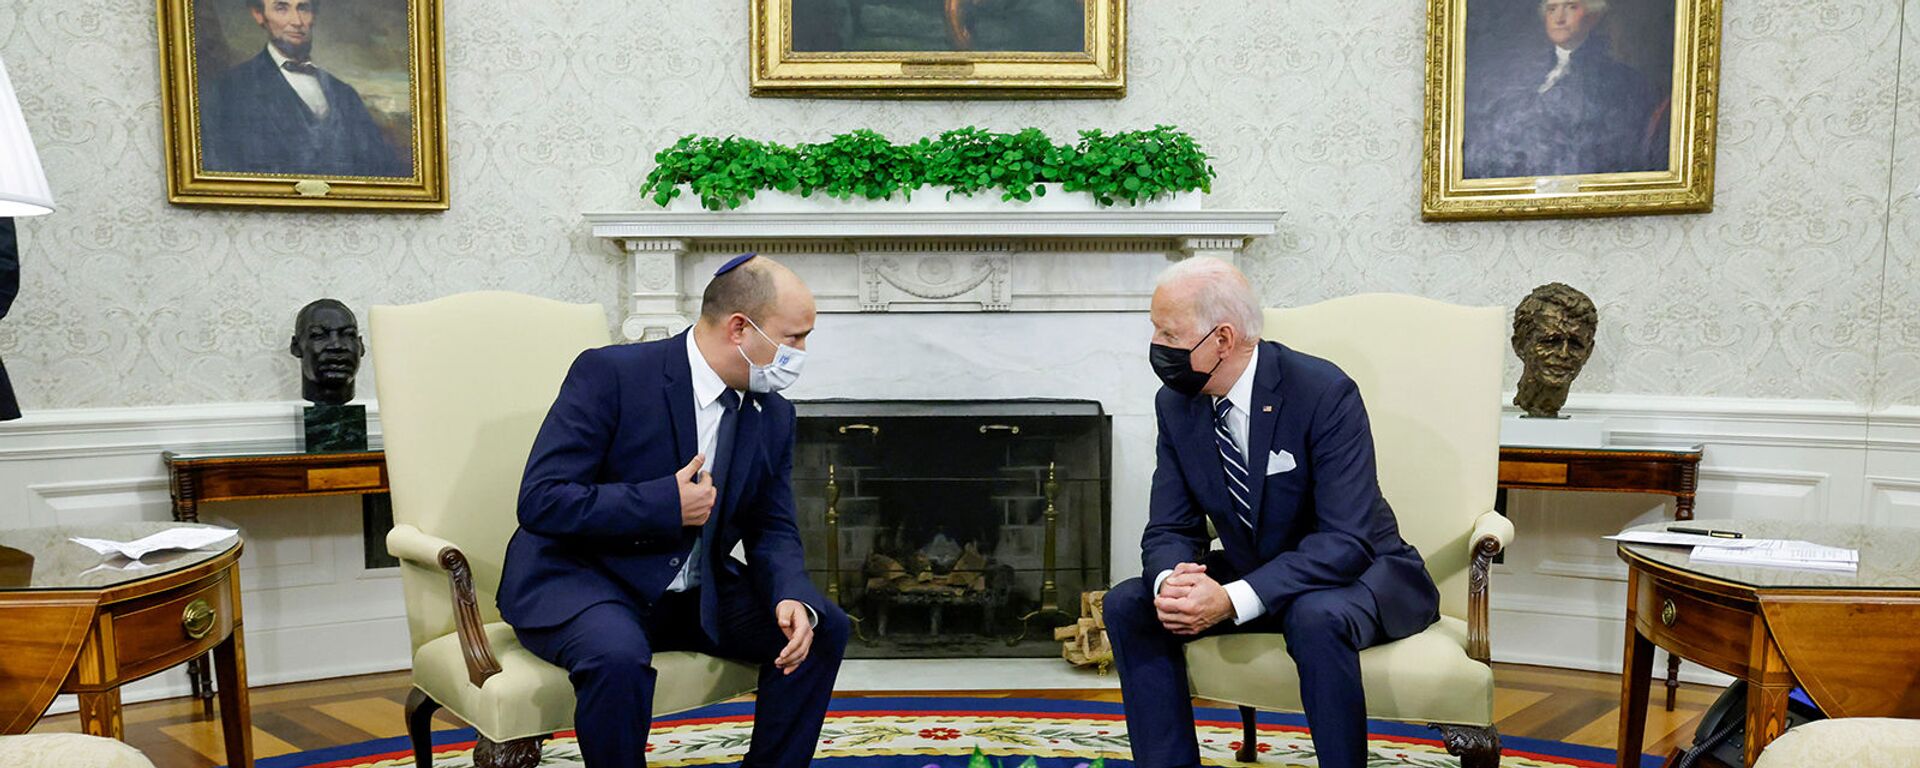 Президент США Джо Байден и премьер-министр Израиля Нафтали Беннетт беседуют во время встречи в Овальном кабинете Белого дома (27 августа 2021). Вашингтон - Sputnik Армения, 1920, 29.08.2021